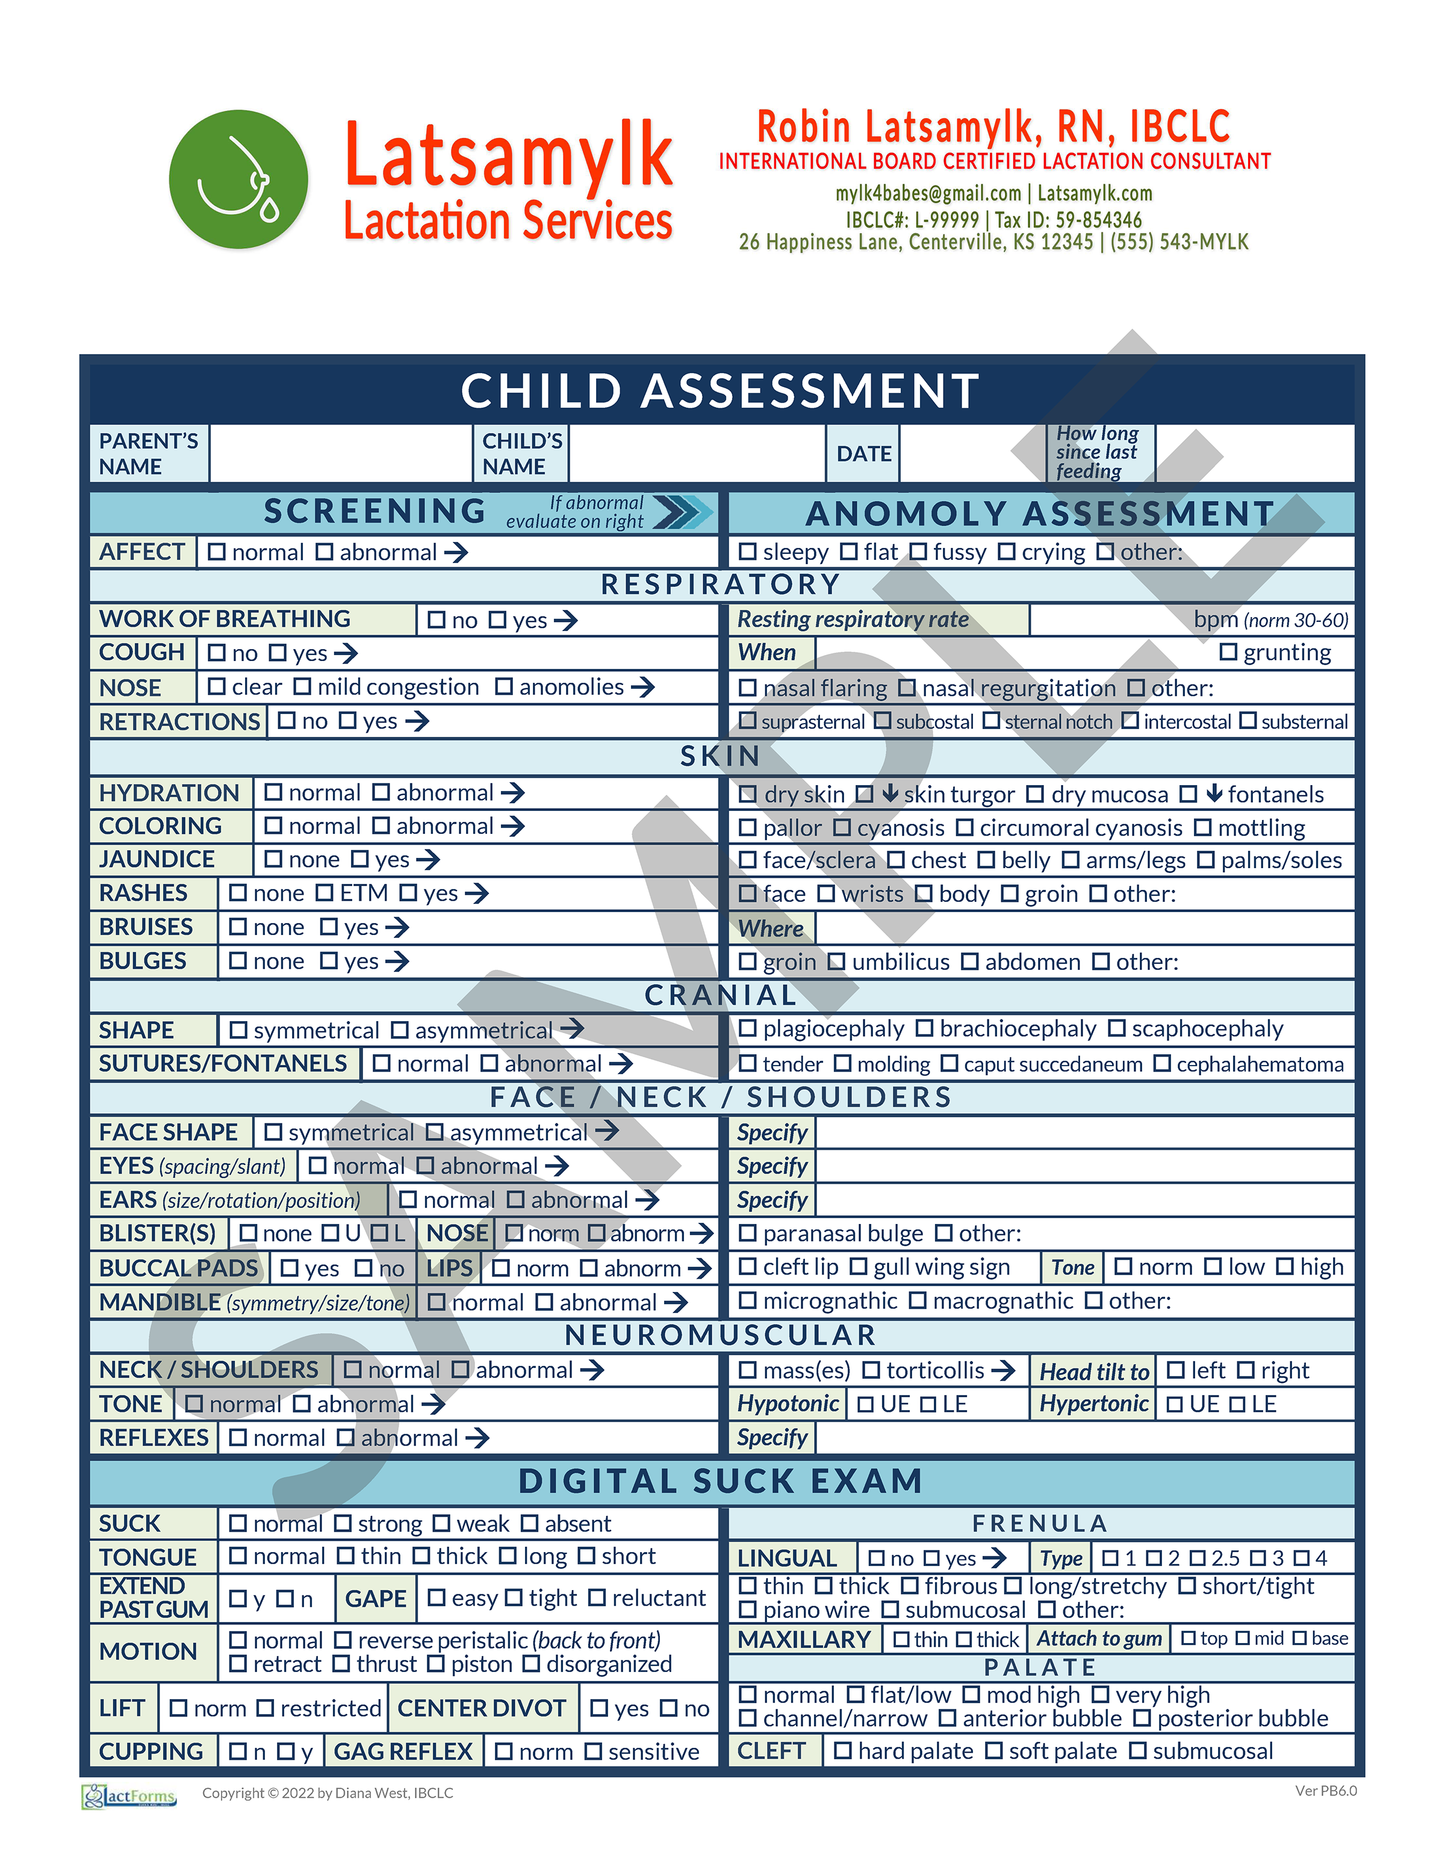 Child Assessment